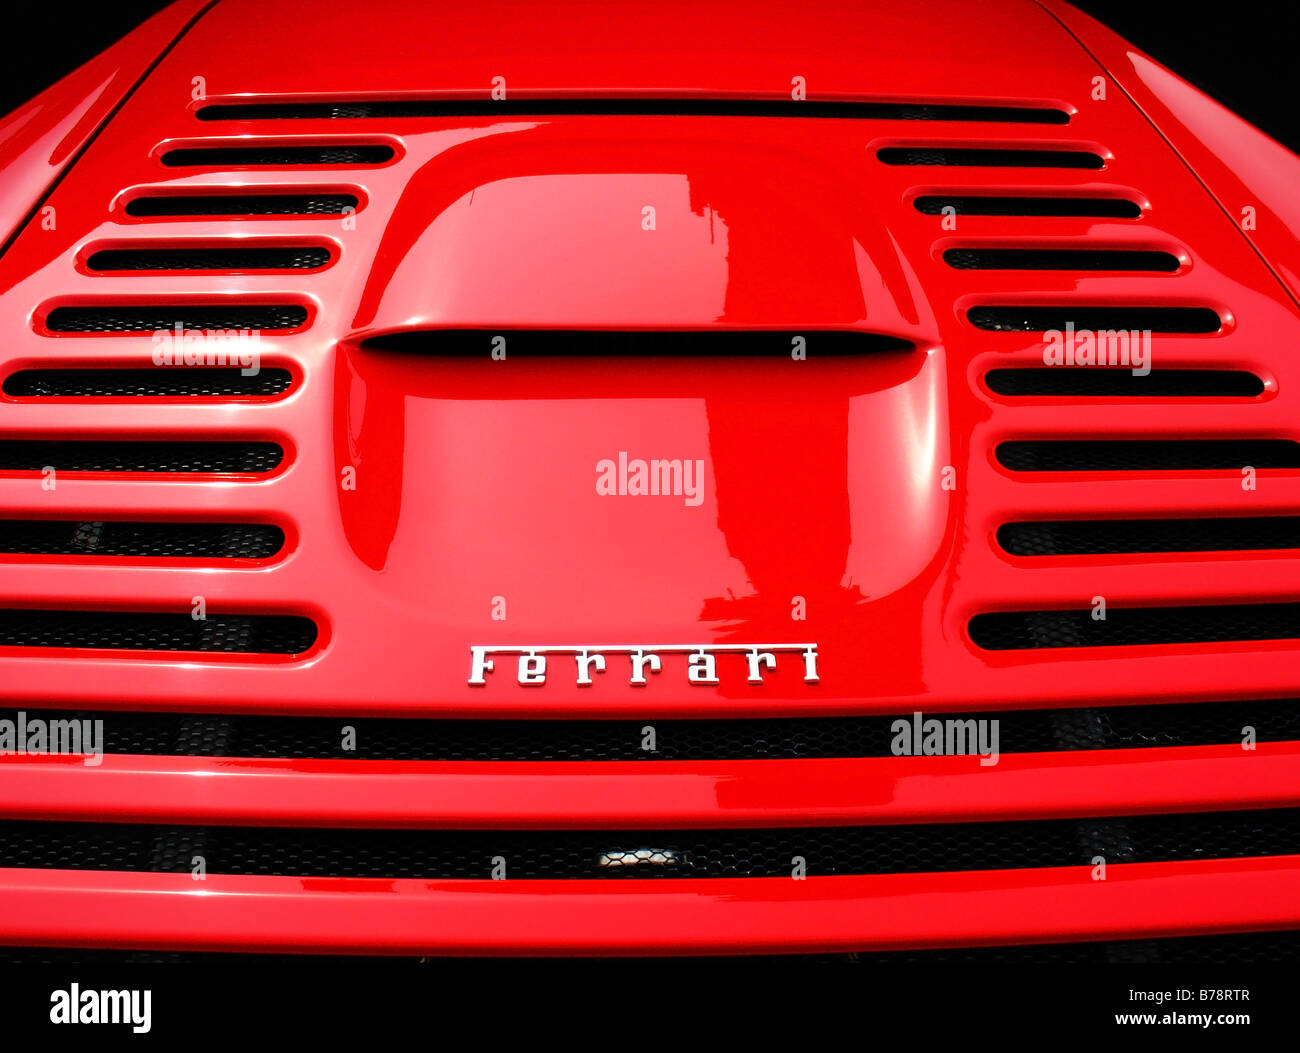 Motorabdeckung von einem roten Ferarri Sportwagen Stockfoto